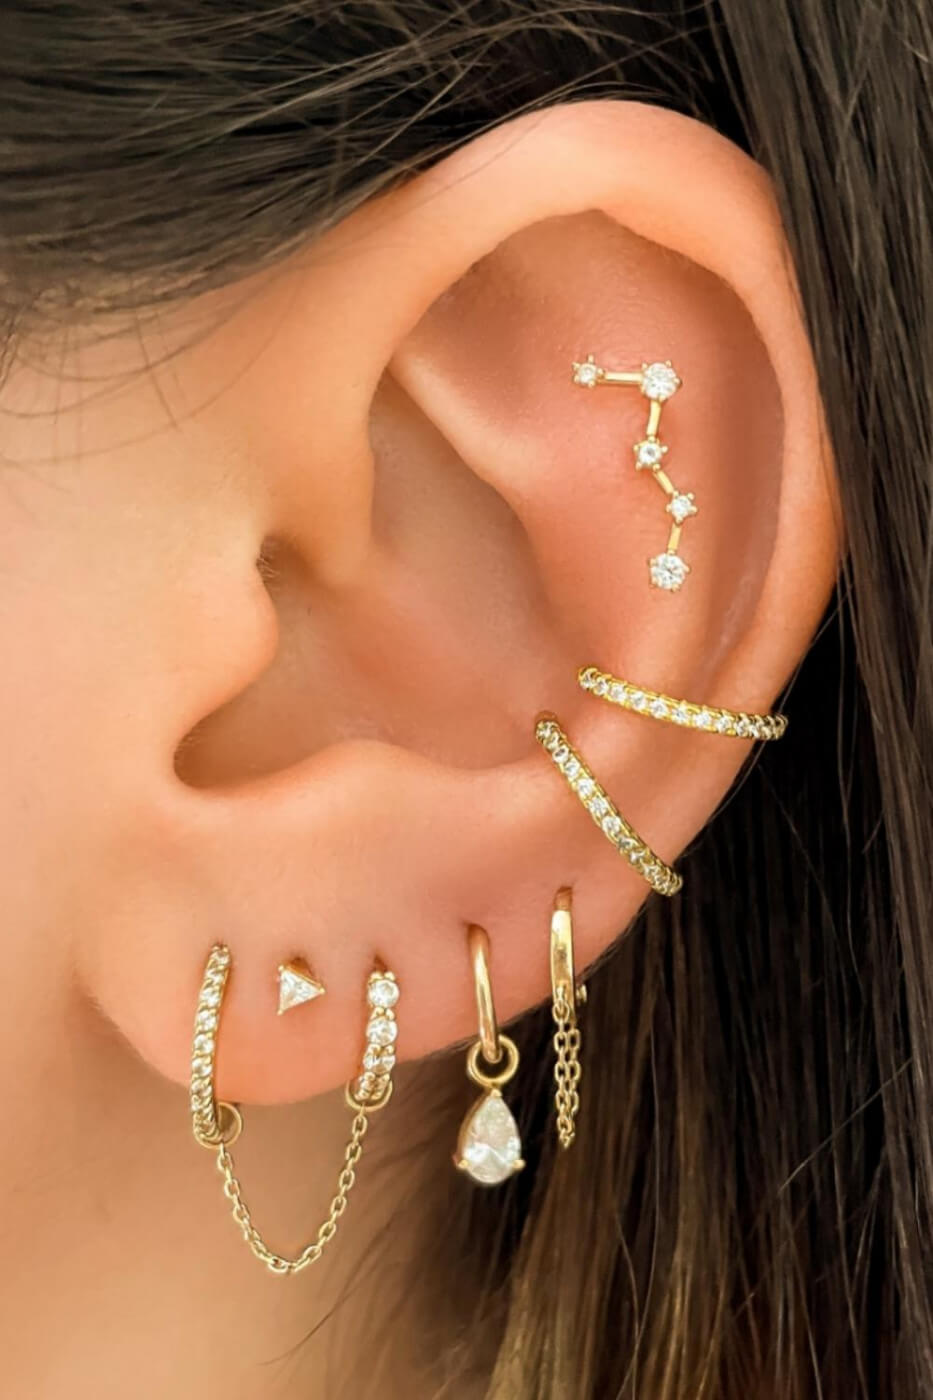 Cute Ear Piercings